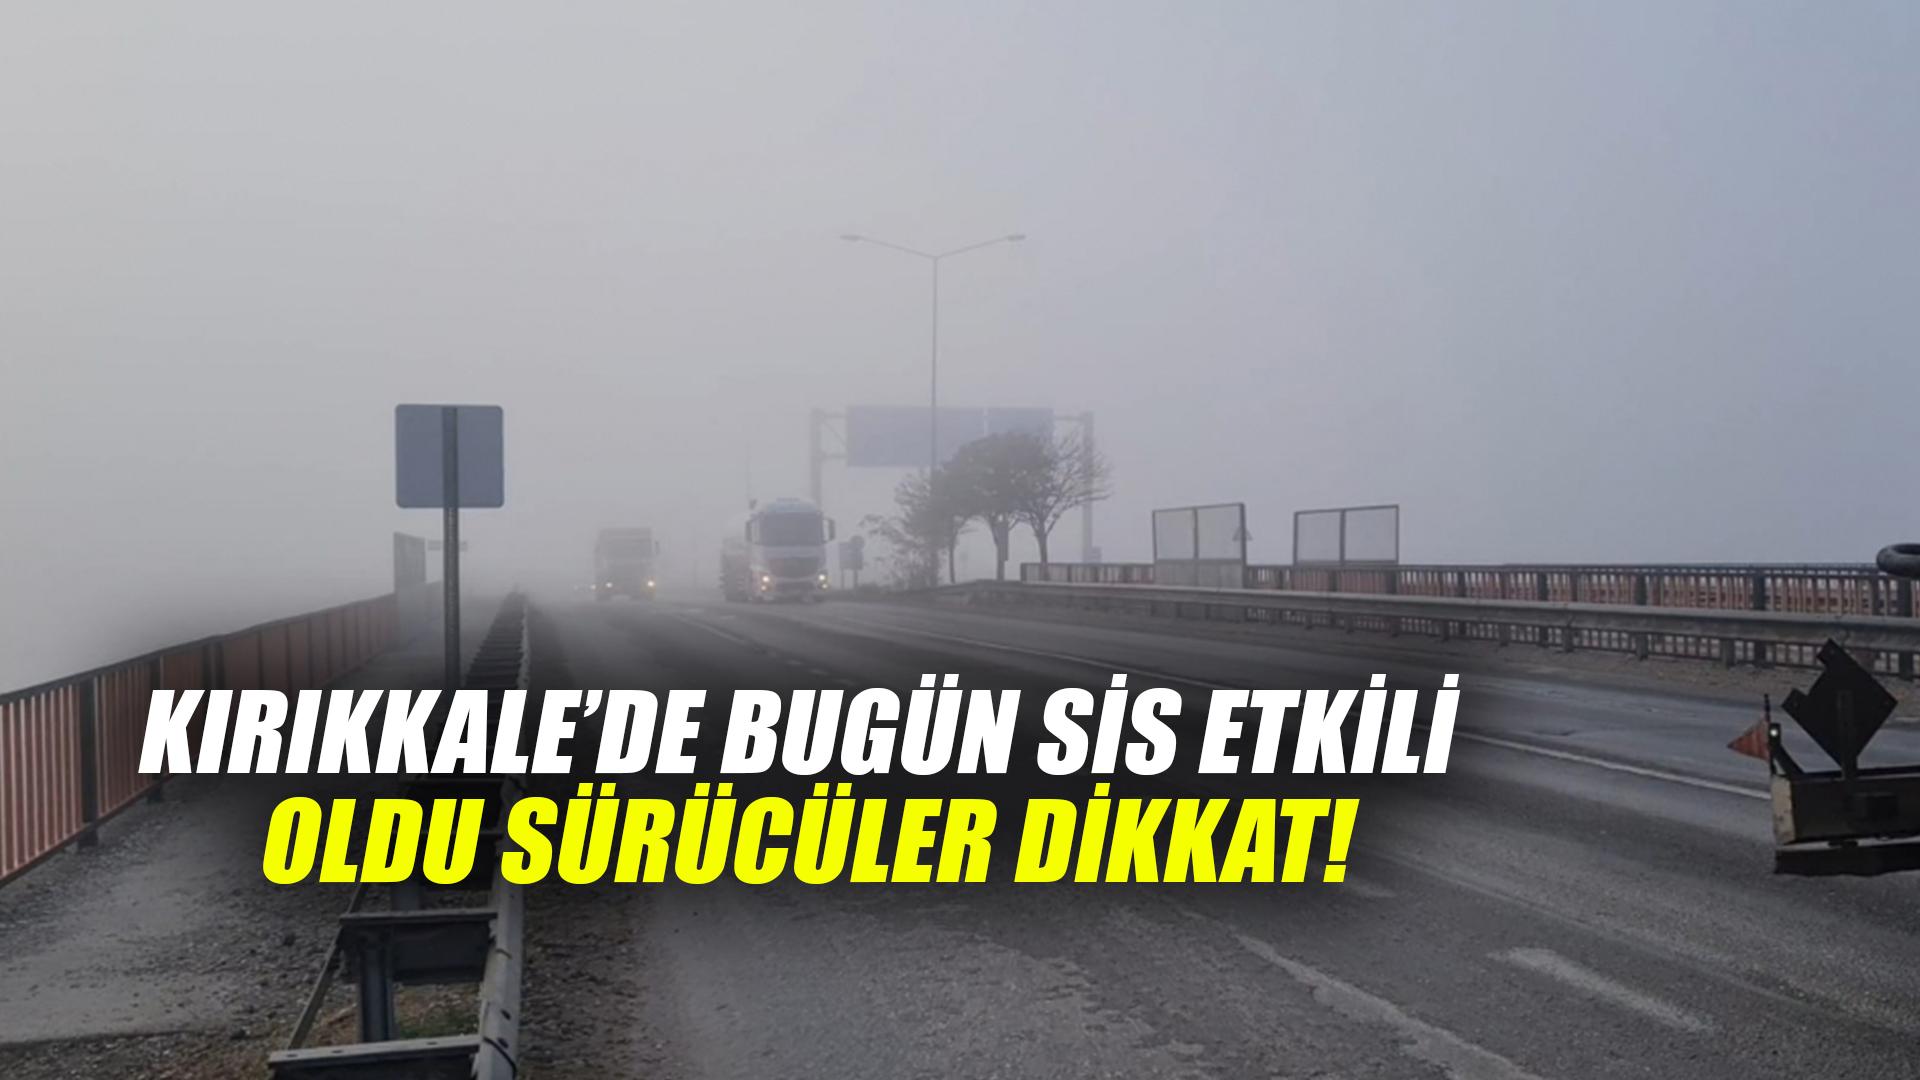 Kırıkkale’de bugün sis etkili oldu sürücüler dikkat!